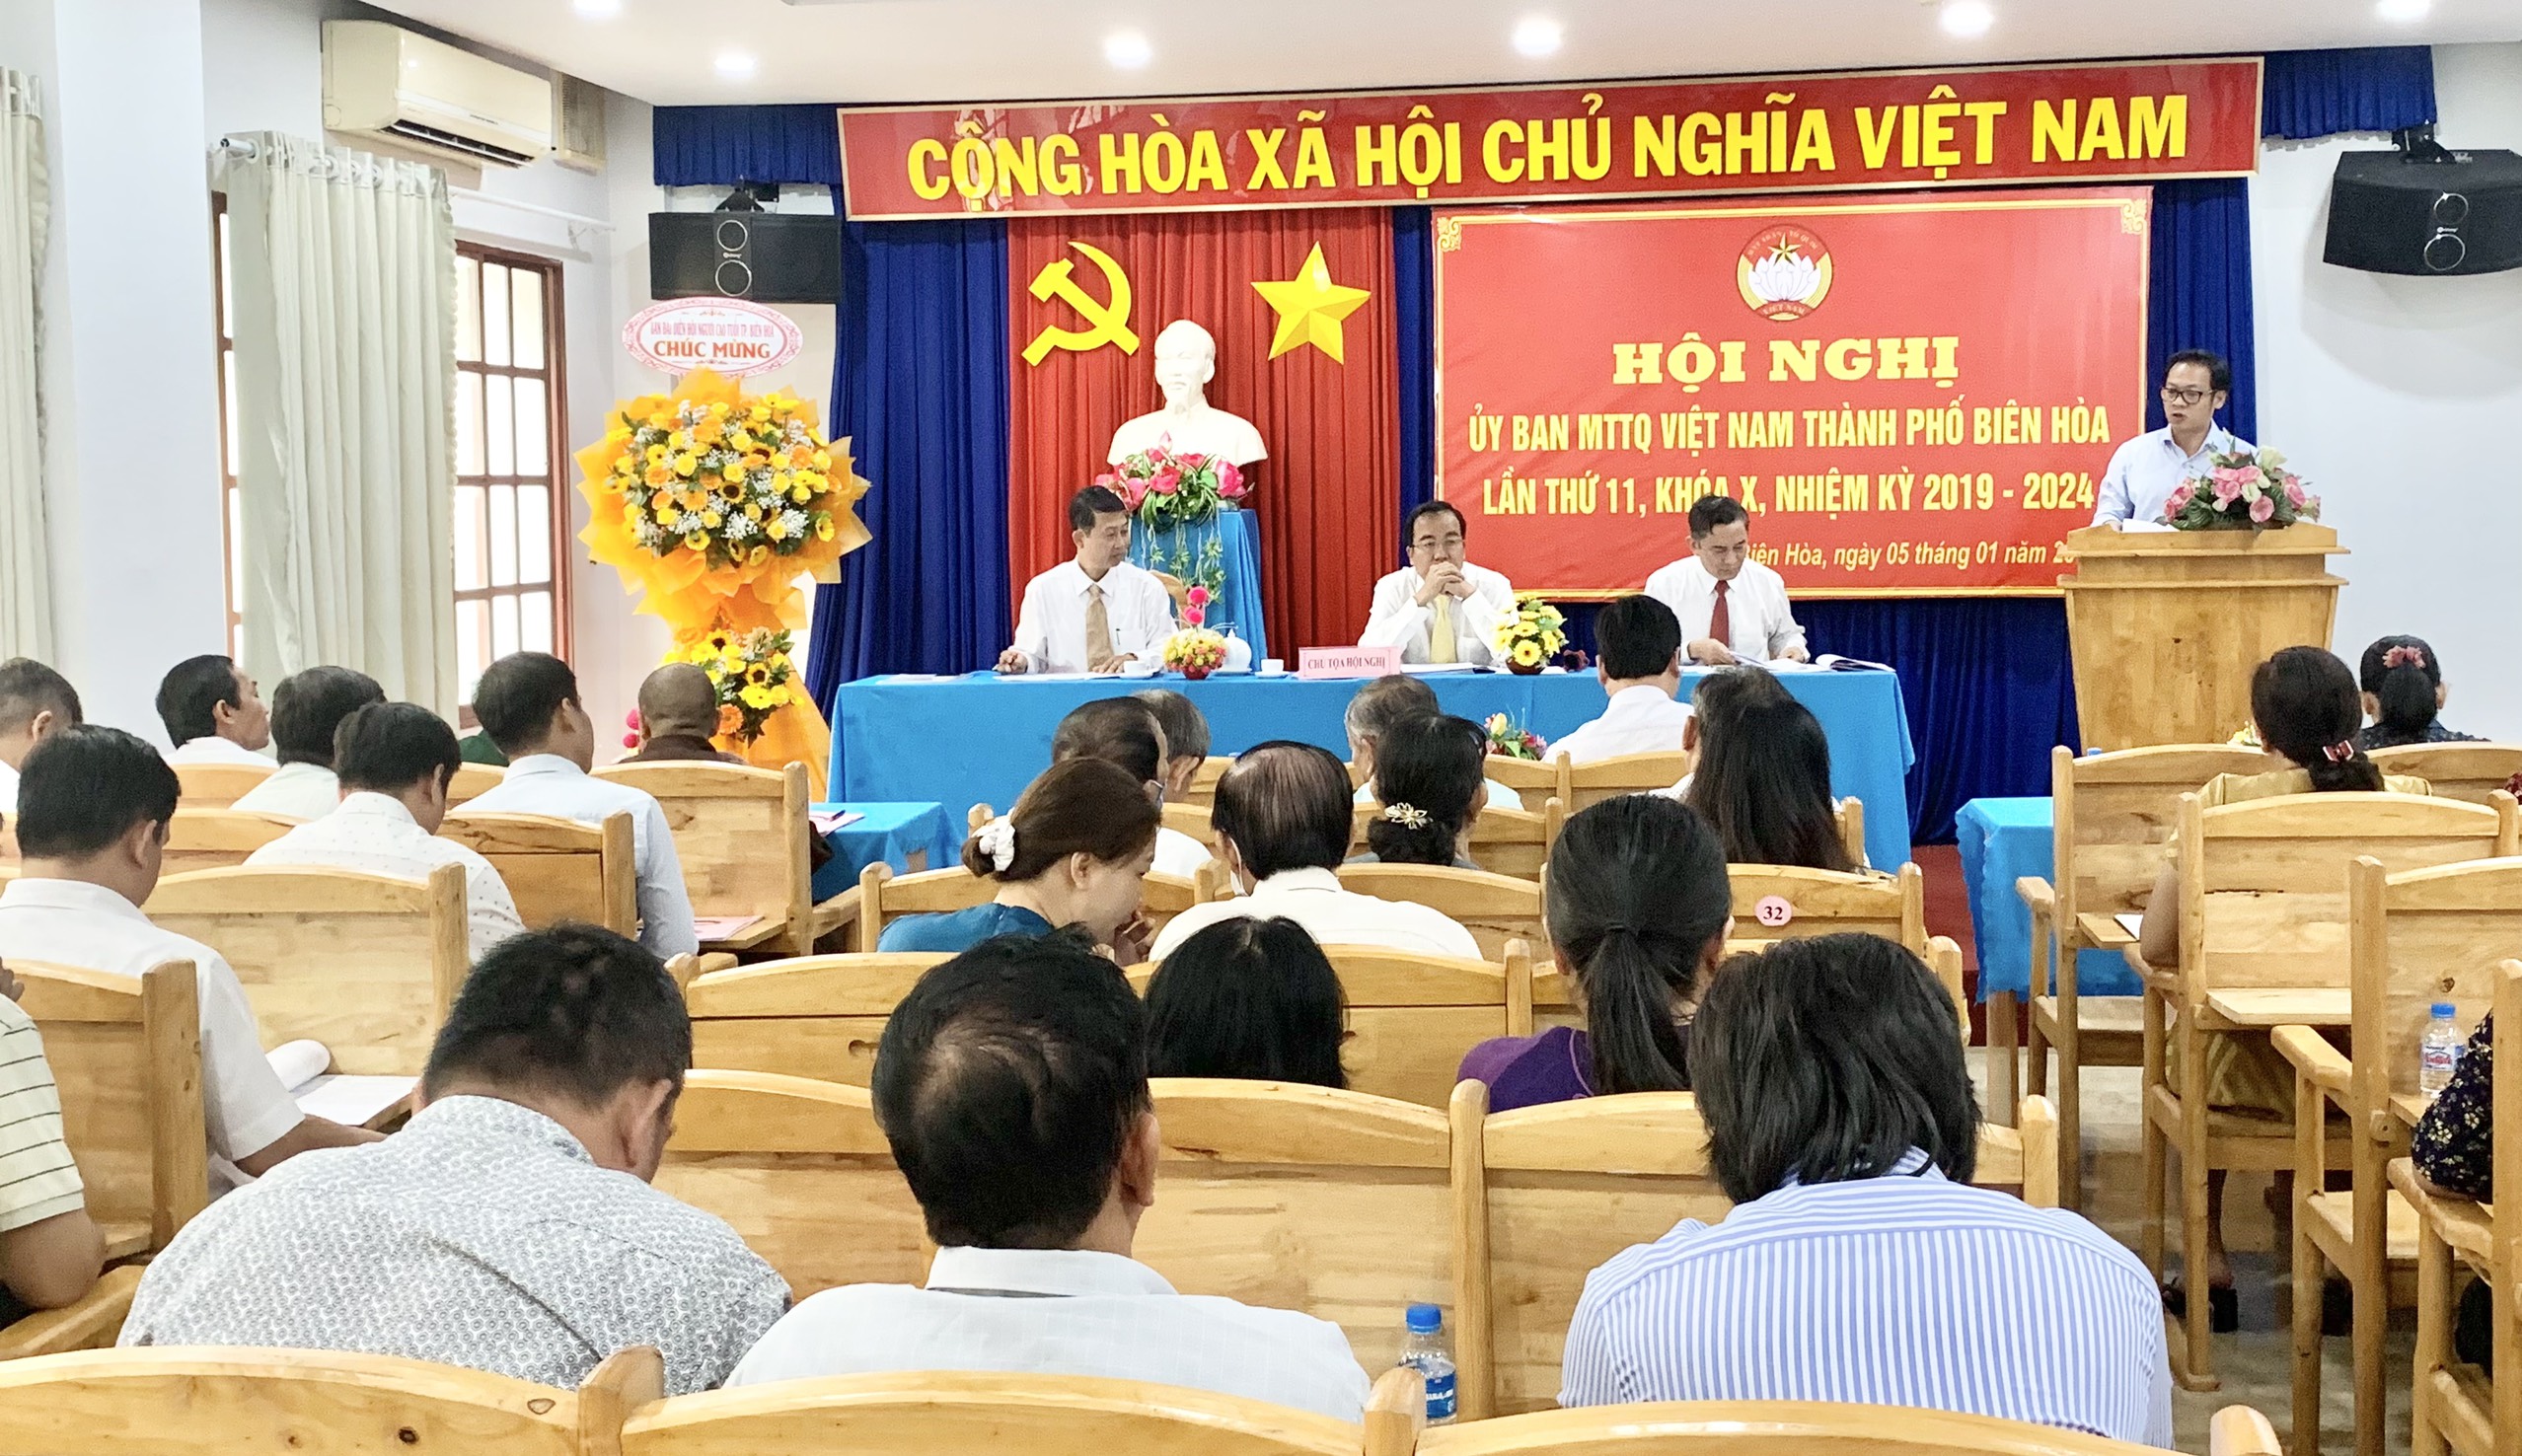 Tổ chức Hội nghị Ủy ban MTTQ Việt Nam thành phố Biên Hòa, lần thứ 11, khóa X, nhiệm kỳ 2019 – 2024, ...